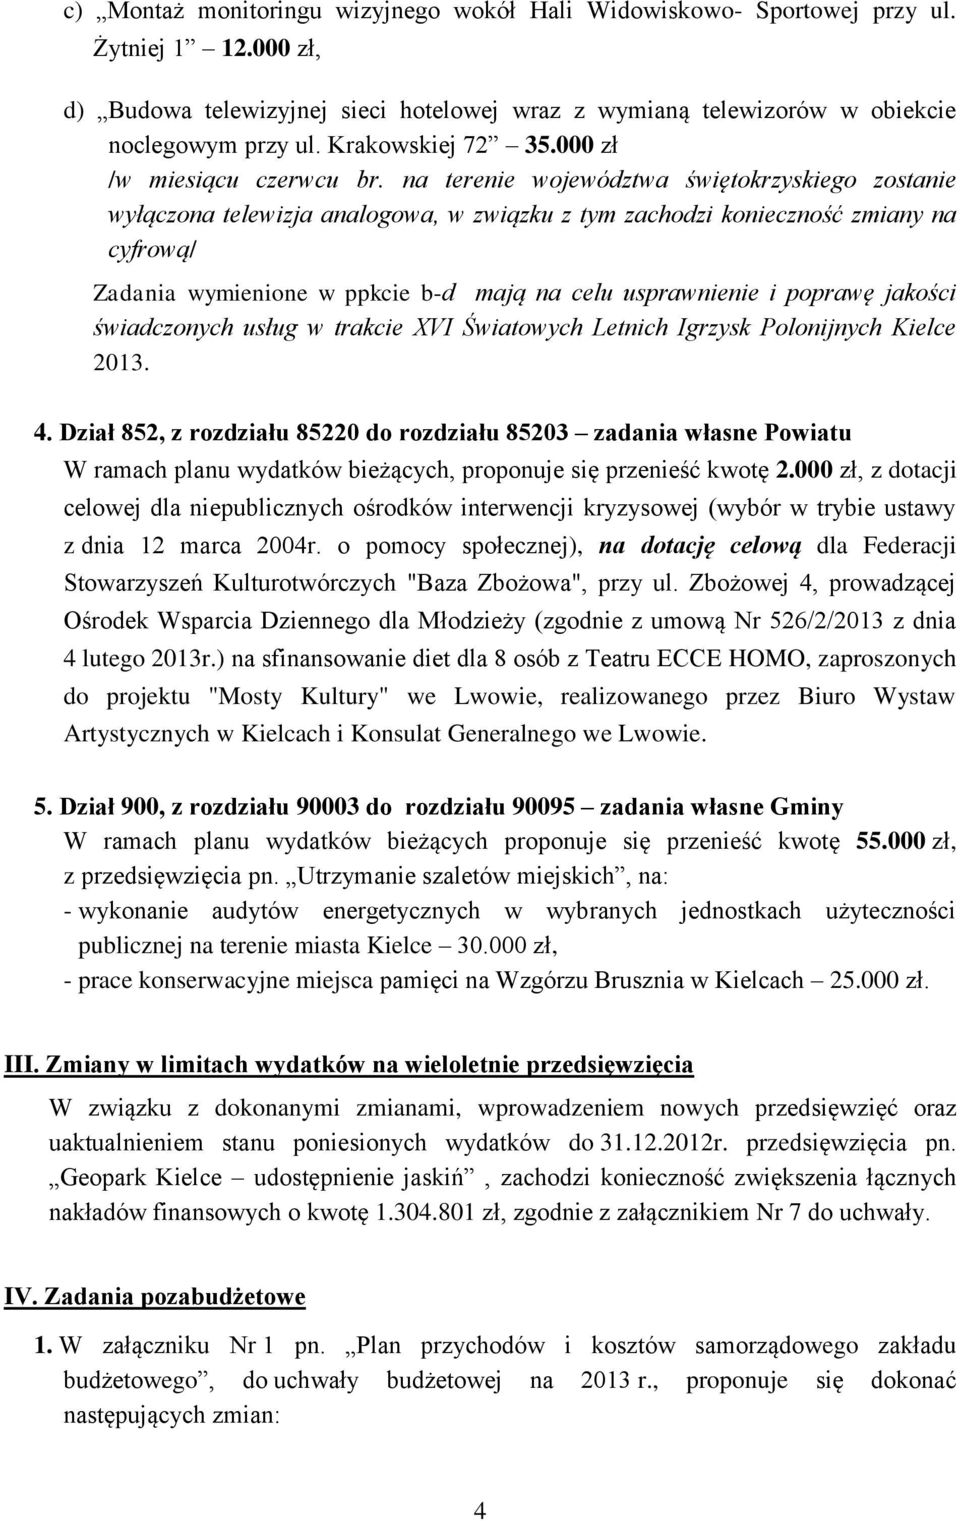 na terenie województwa świętokrzyskiego zostanie wyłączona telewizja analogowa, w związku z tym zachodzi konieczność zmiany na cyfrową/ Zadania wymienione w ppkcie b-d mają na celu usprawnienie i